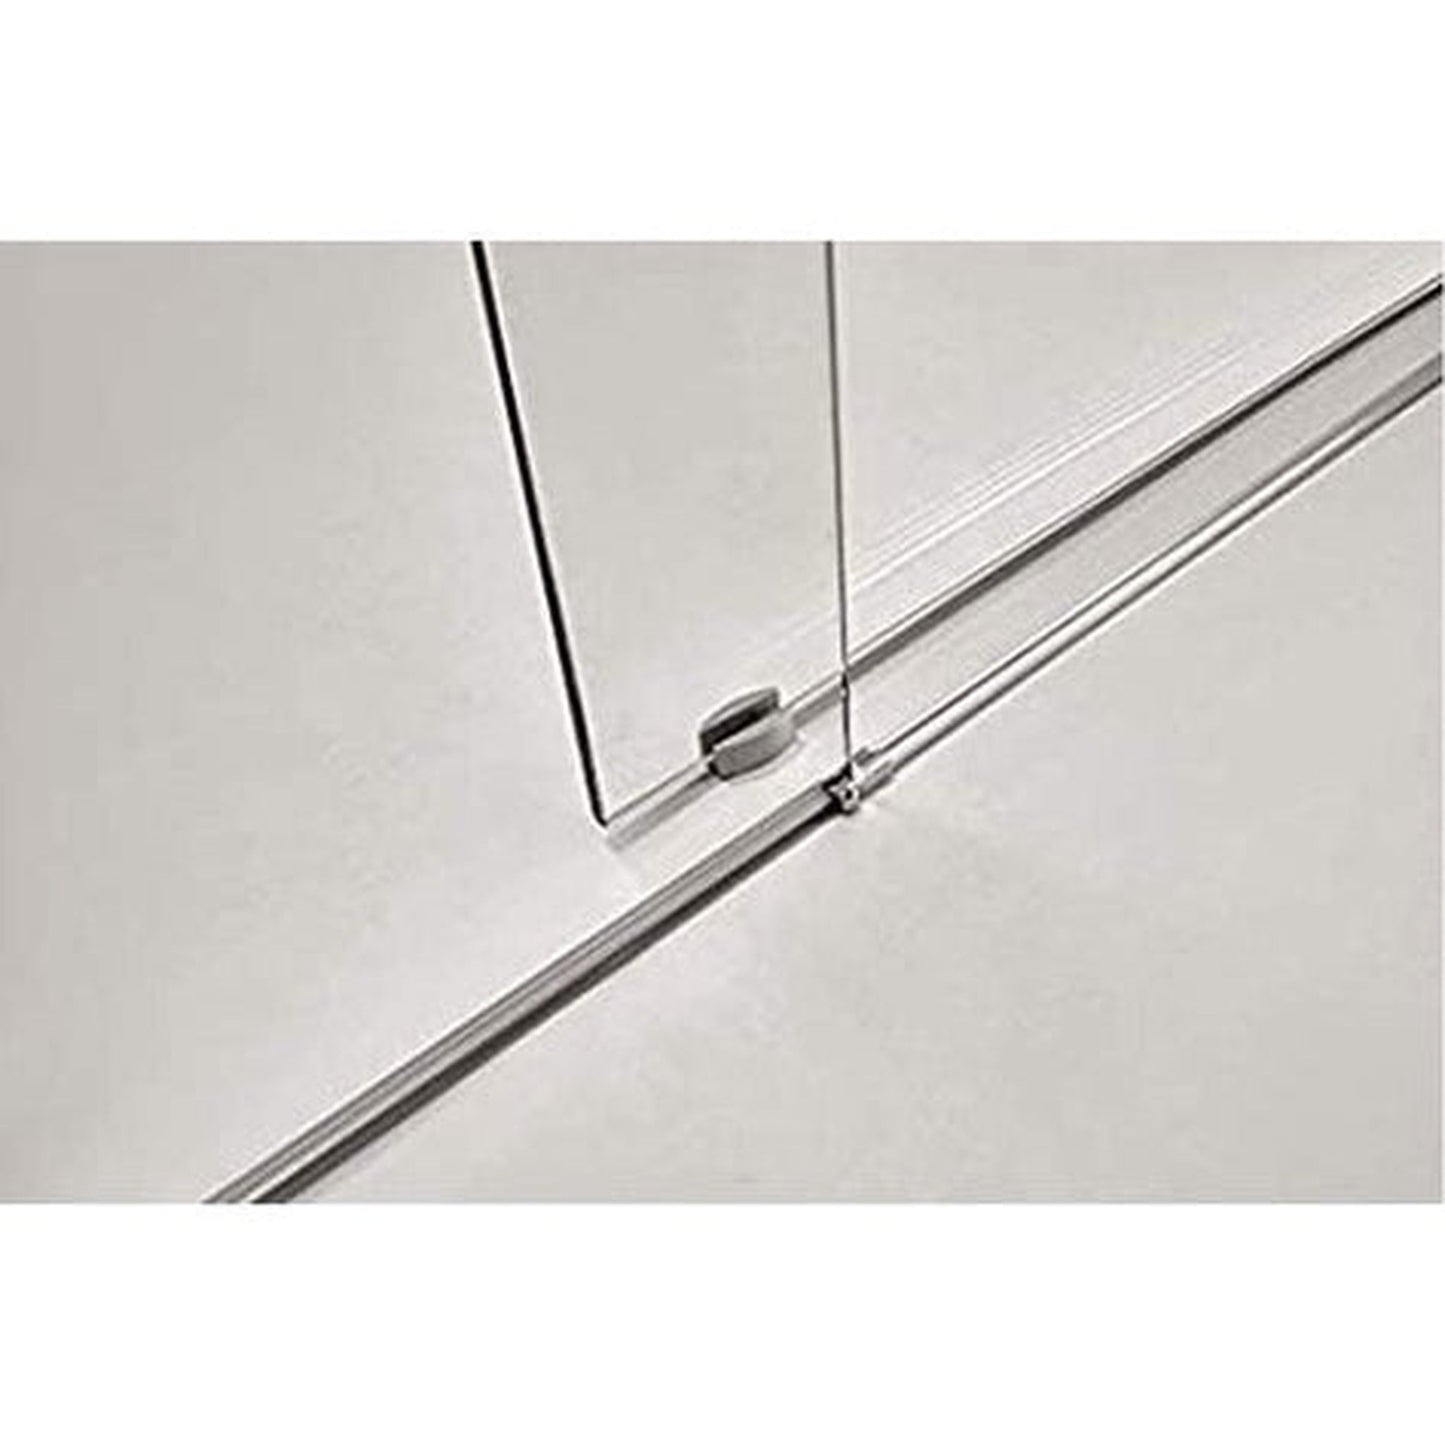 Vanity Art 60" W x 76" H Frameless Single Sliding Glass Barn Shower Door With Polished Chrome